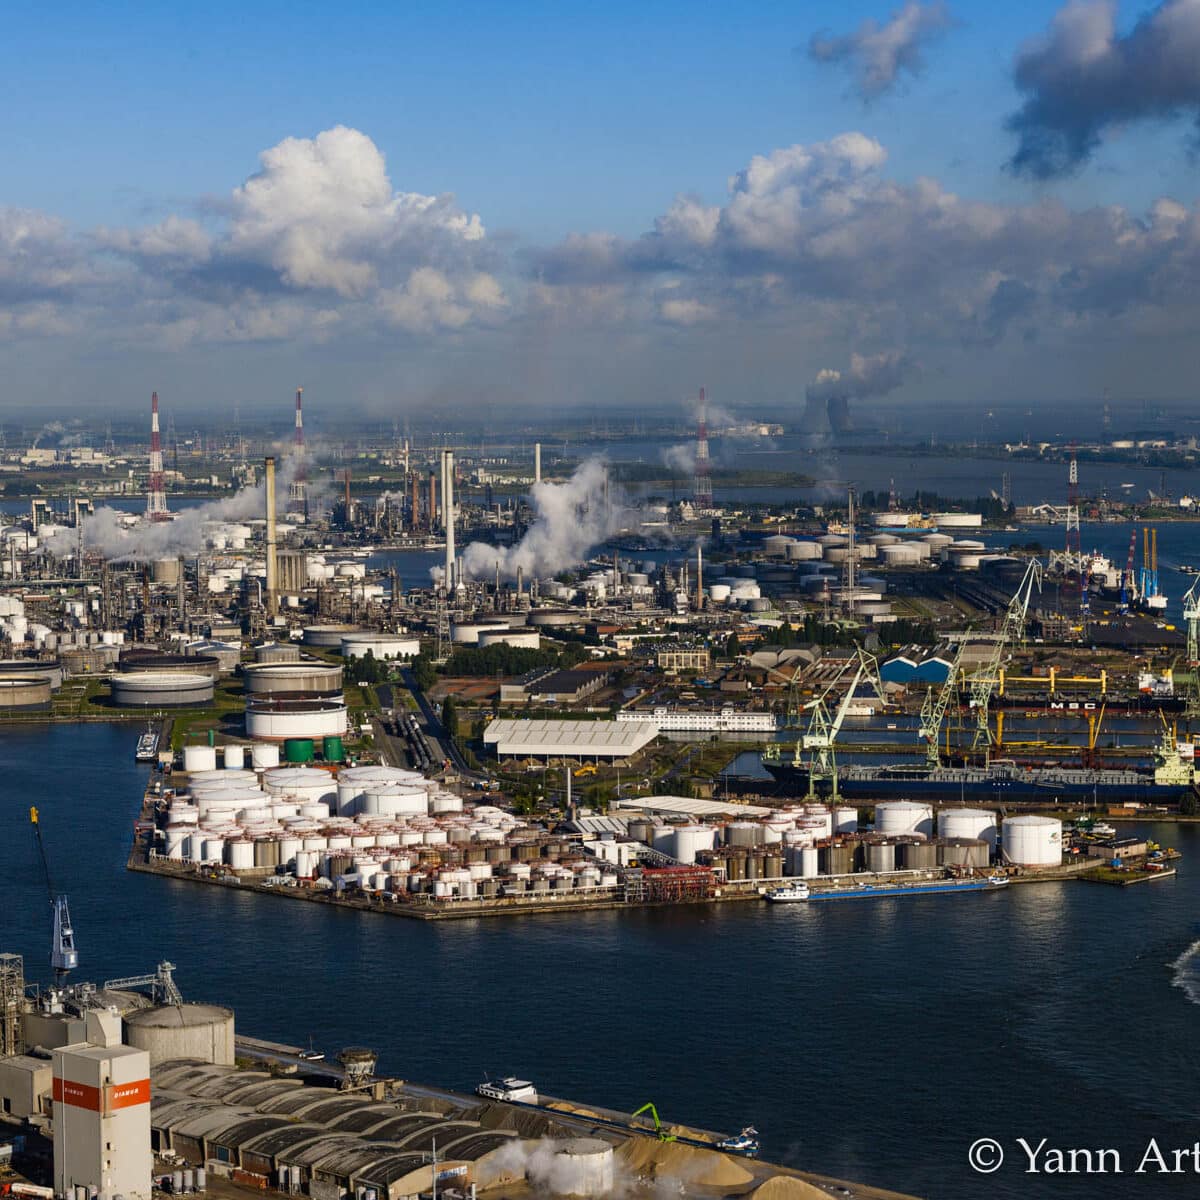 Belgique port indutriel et complexe pétrochimique